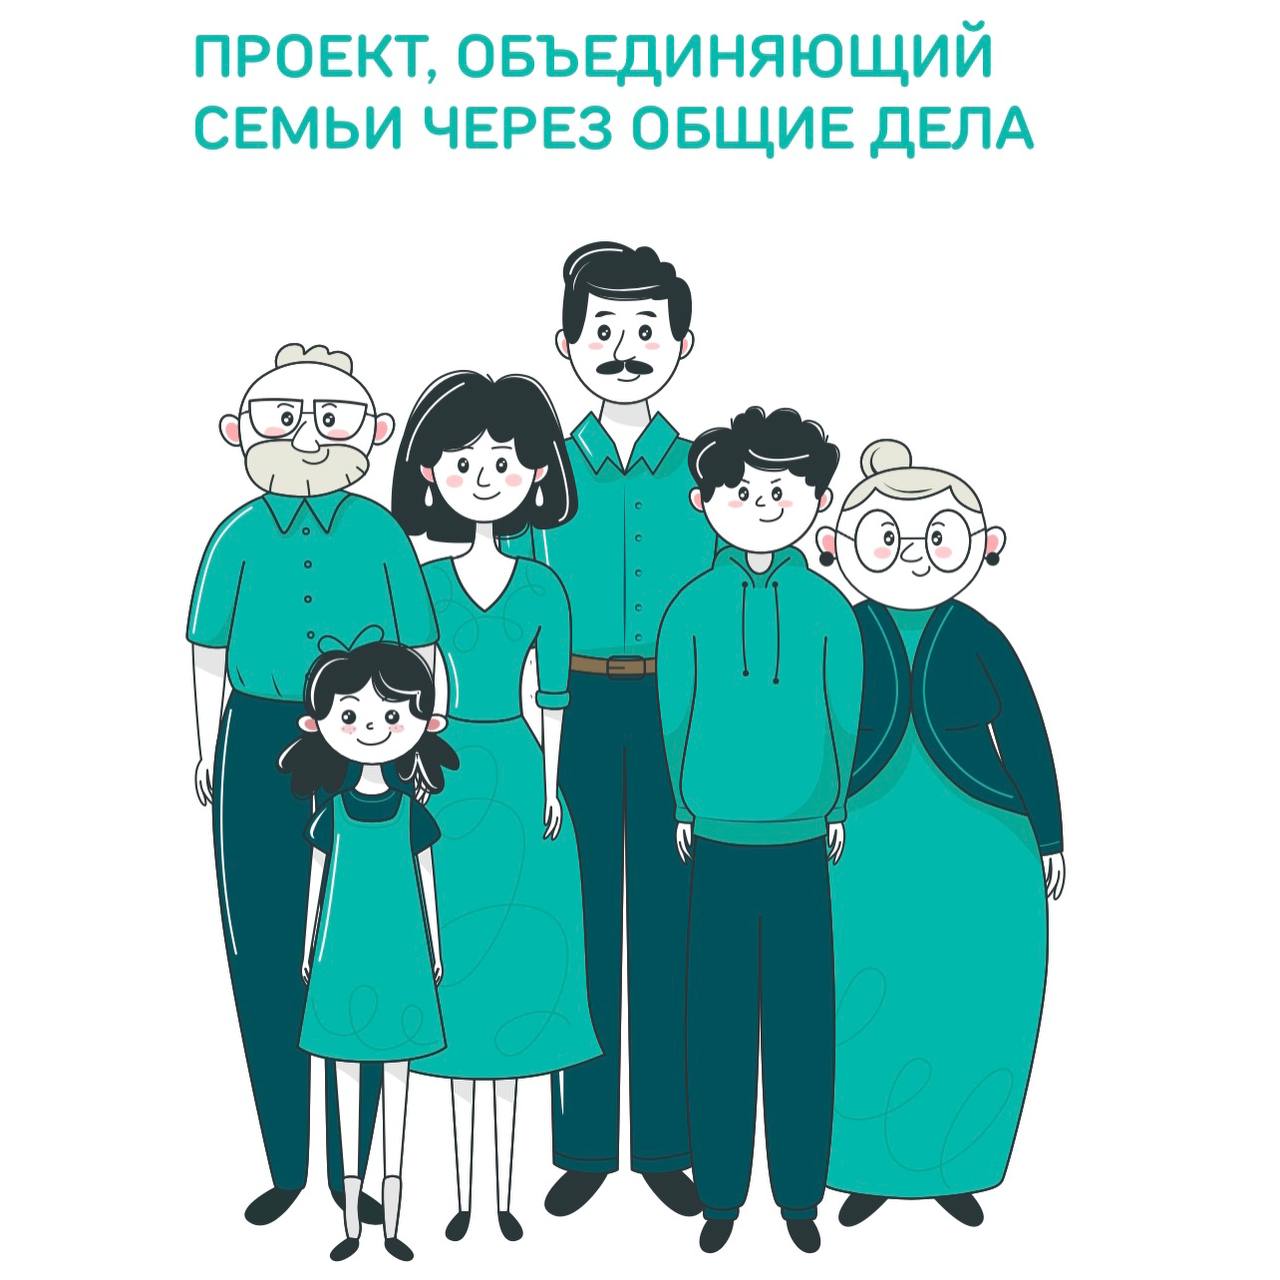 Семьи с детьми Ульяновской области приглашают принять участие в конкурсе «Это у нас семейное».